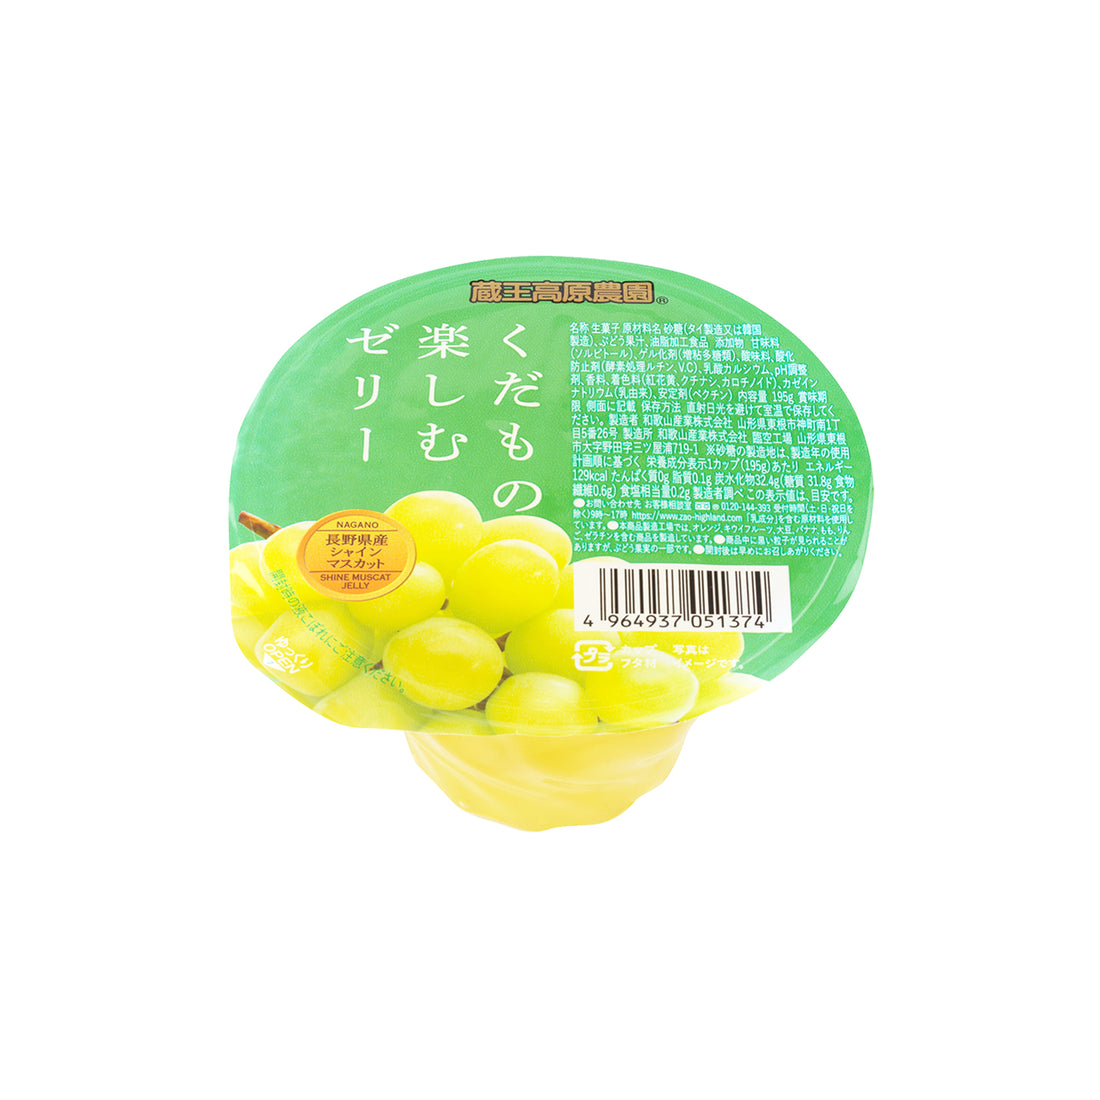 Wakayama Sangyo Shine Muscat Jelly from Nagano 4pcs